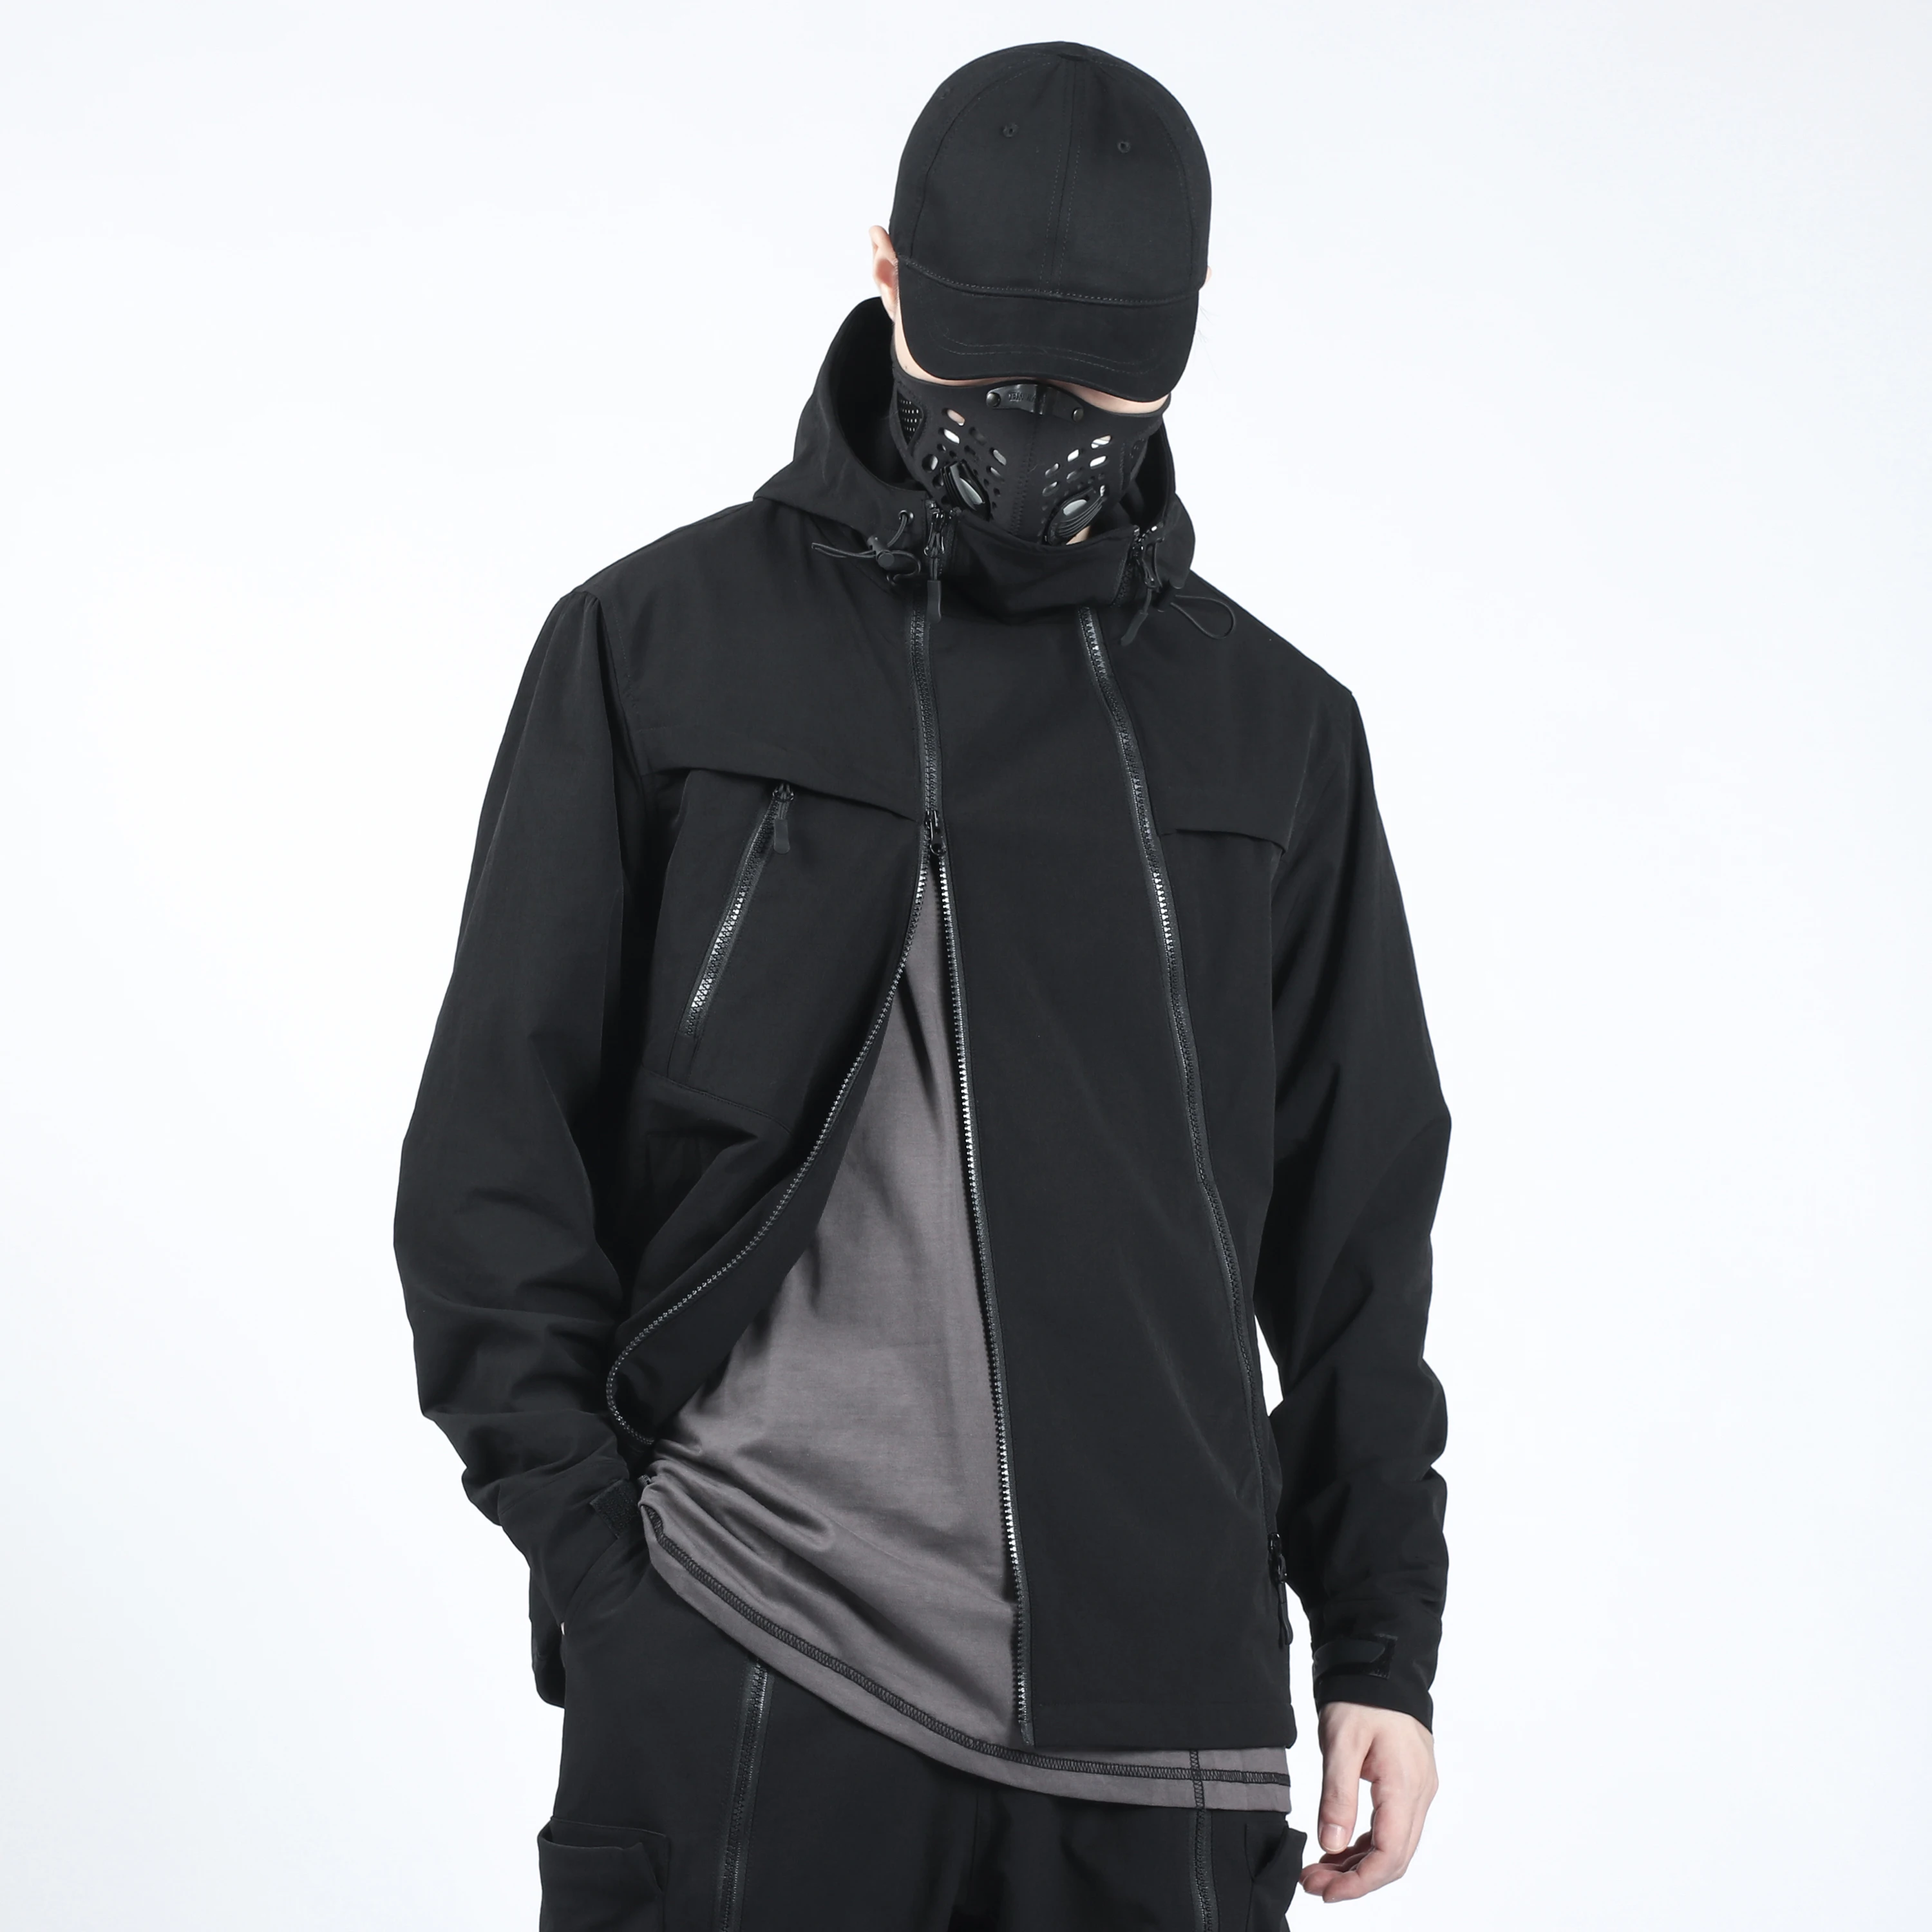 

SILENSTORM 21AW Three Zipper Lightweight Jacket Silenstorm Techwear Streetwear Ninjawear Aesthetic Futuristic Black Tech Coat